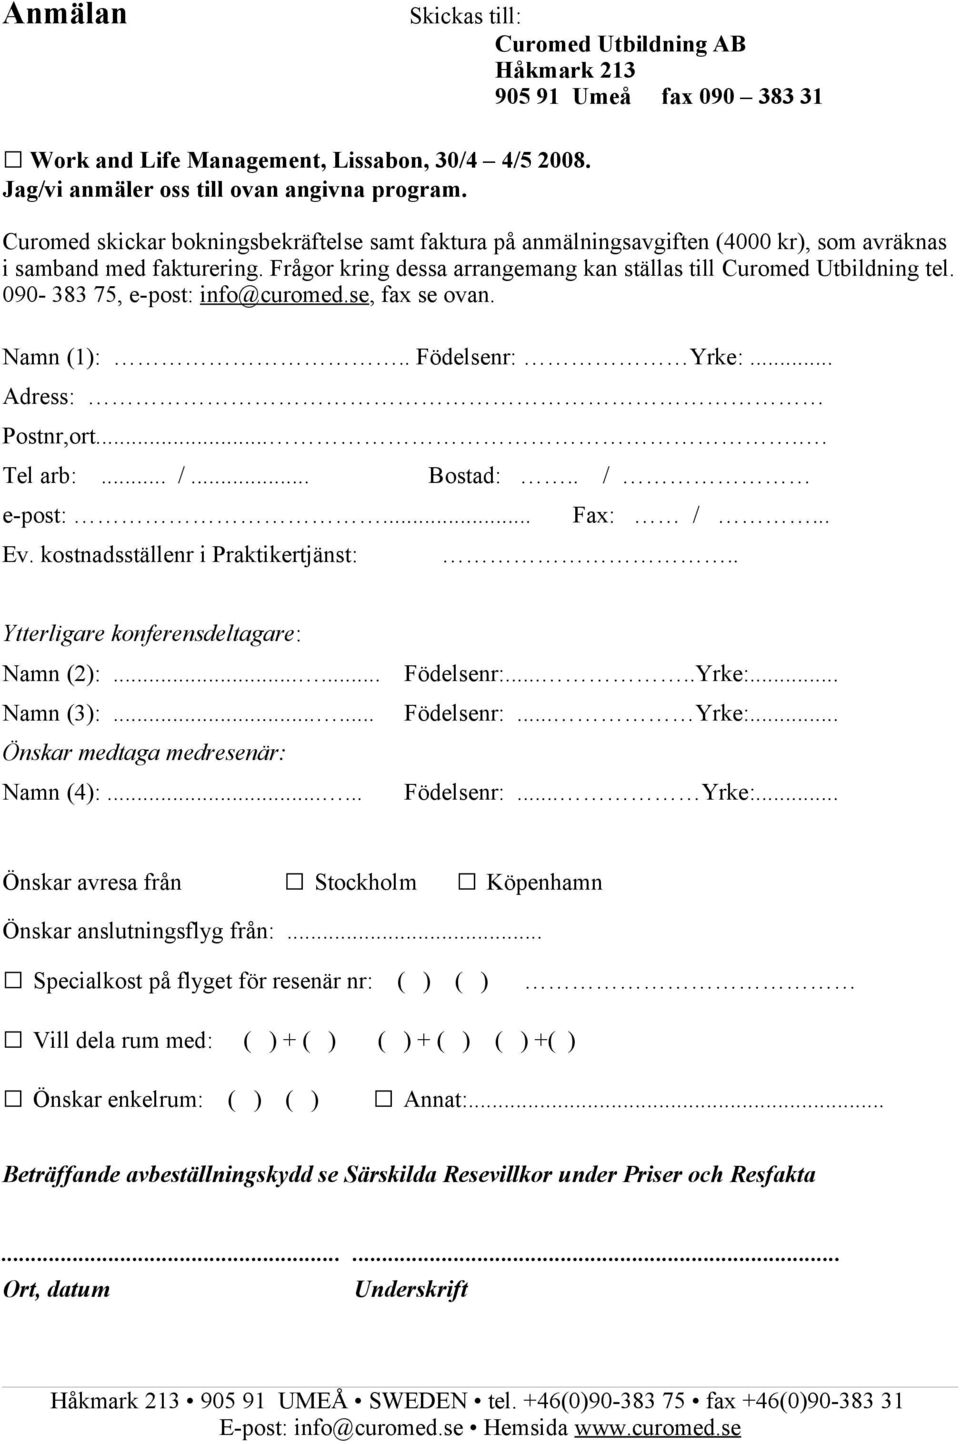 090-383 75, e-post: info@curomed.se, fax se ovan. Namn (1):.. Födelsenr: Yrke:... Adress: Postnr,ort..... Tel arb:... /... Bostad:.. / e-post:... Fax: /... Ev. kostnadsställenr i Praktikertjänst:.